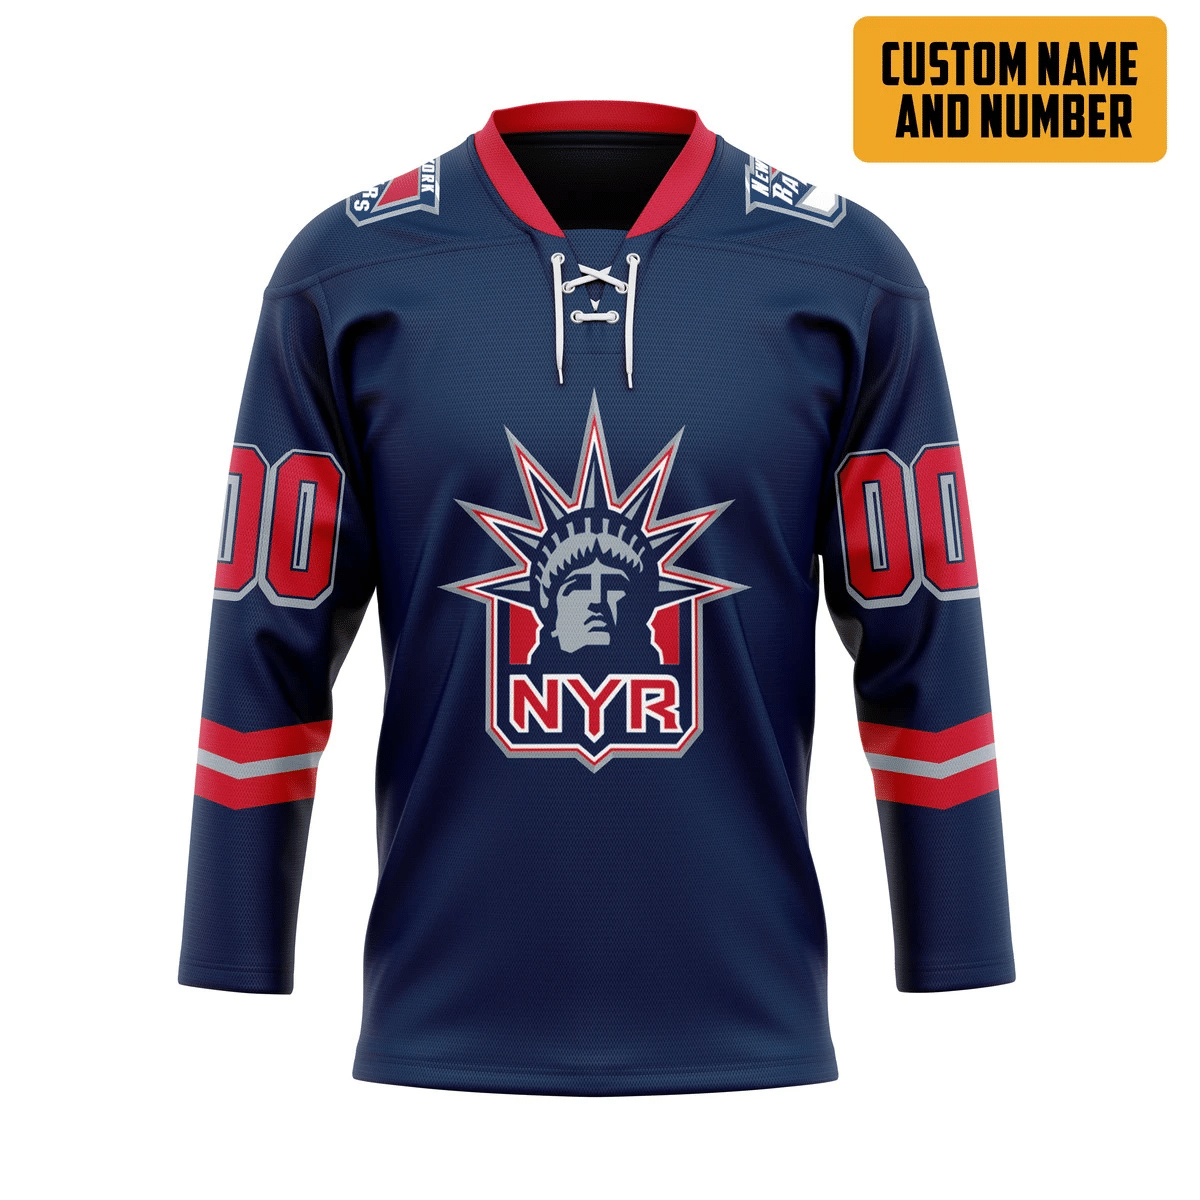 It's only $50 so don't miss out - Be sure to pick up a new hockey shirt today! 383